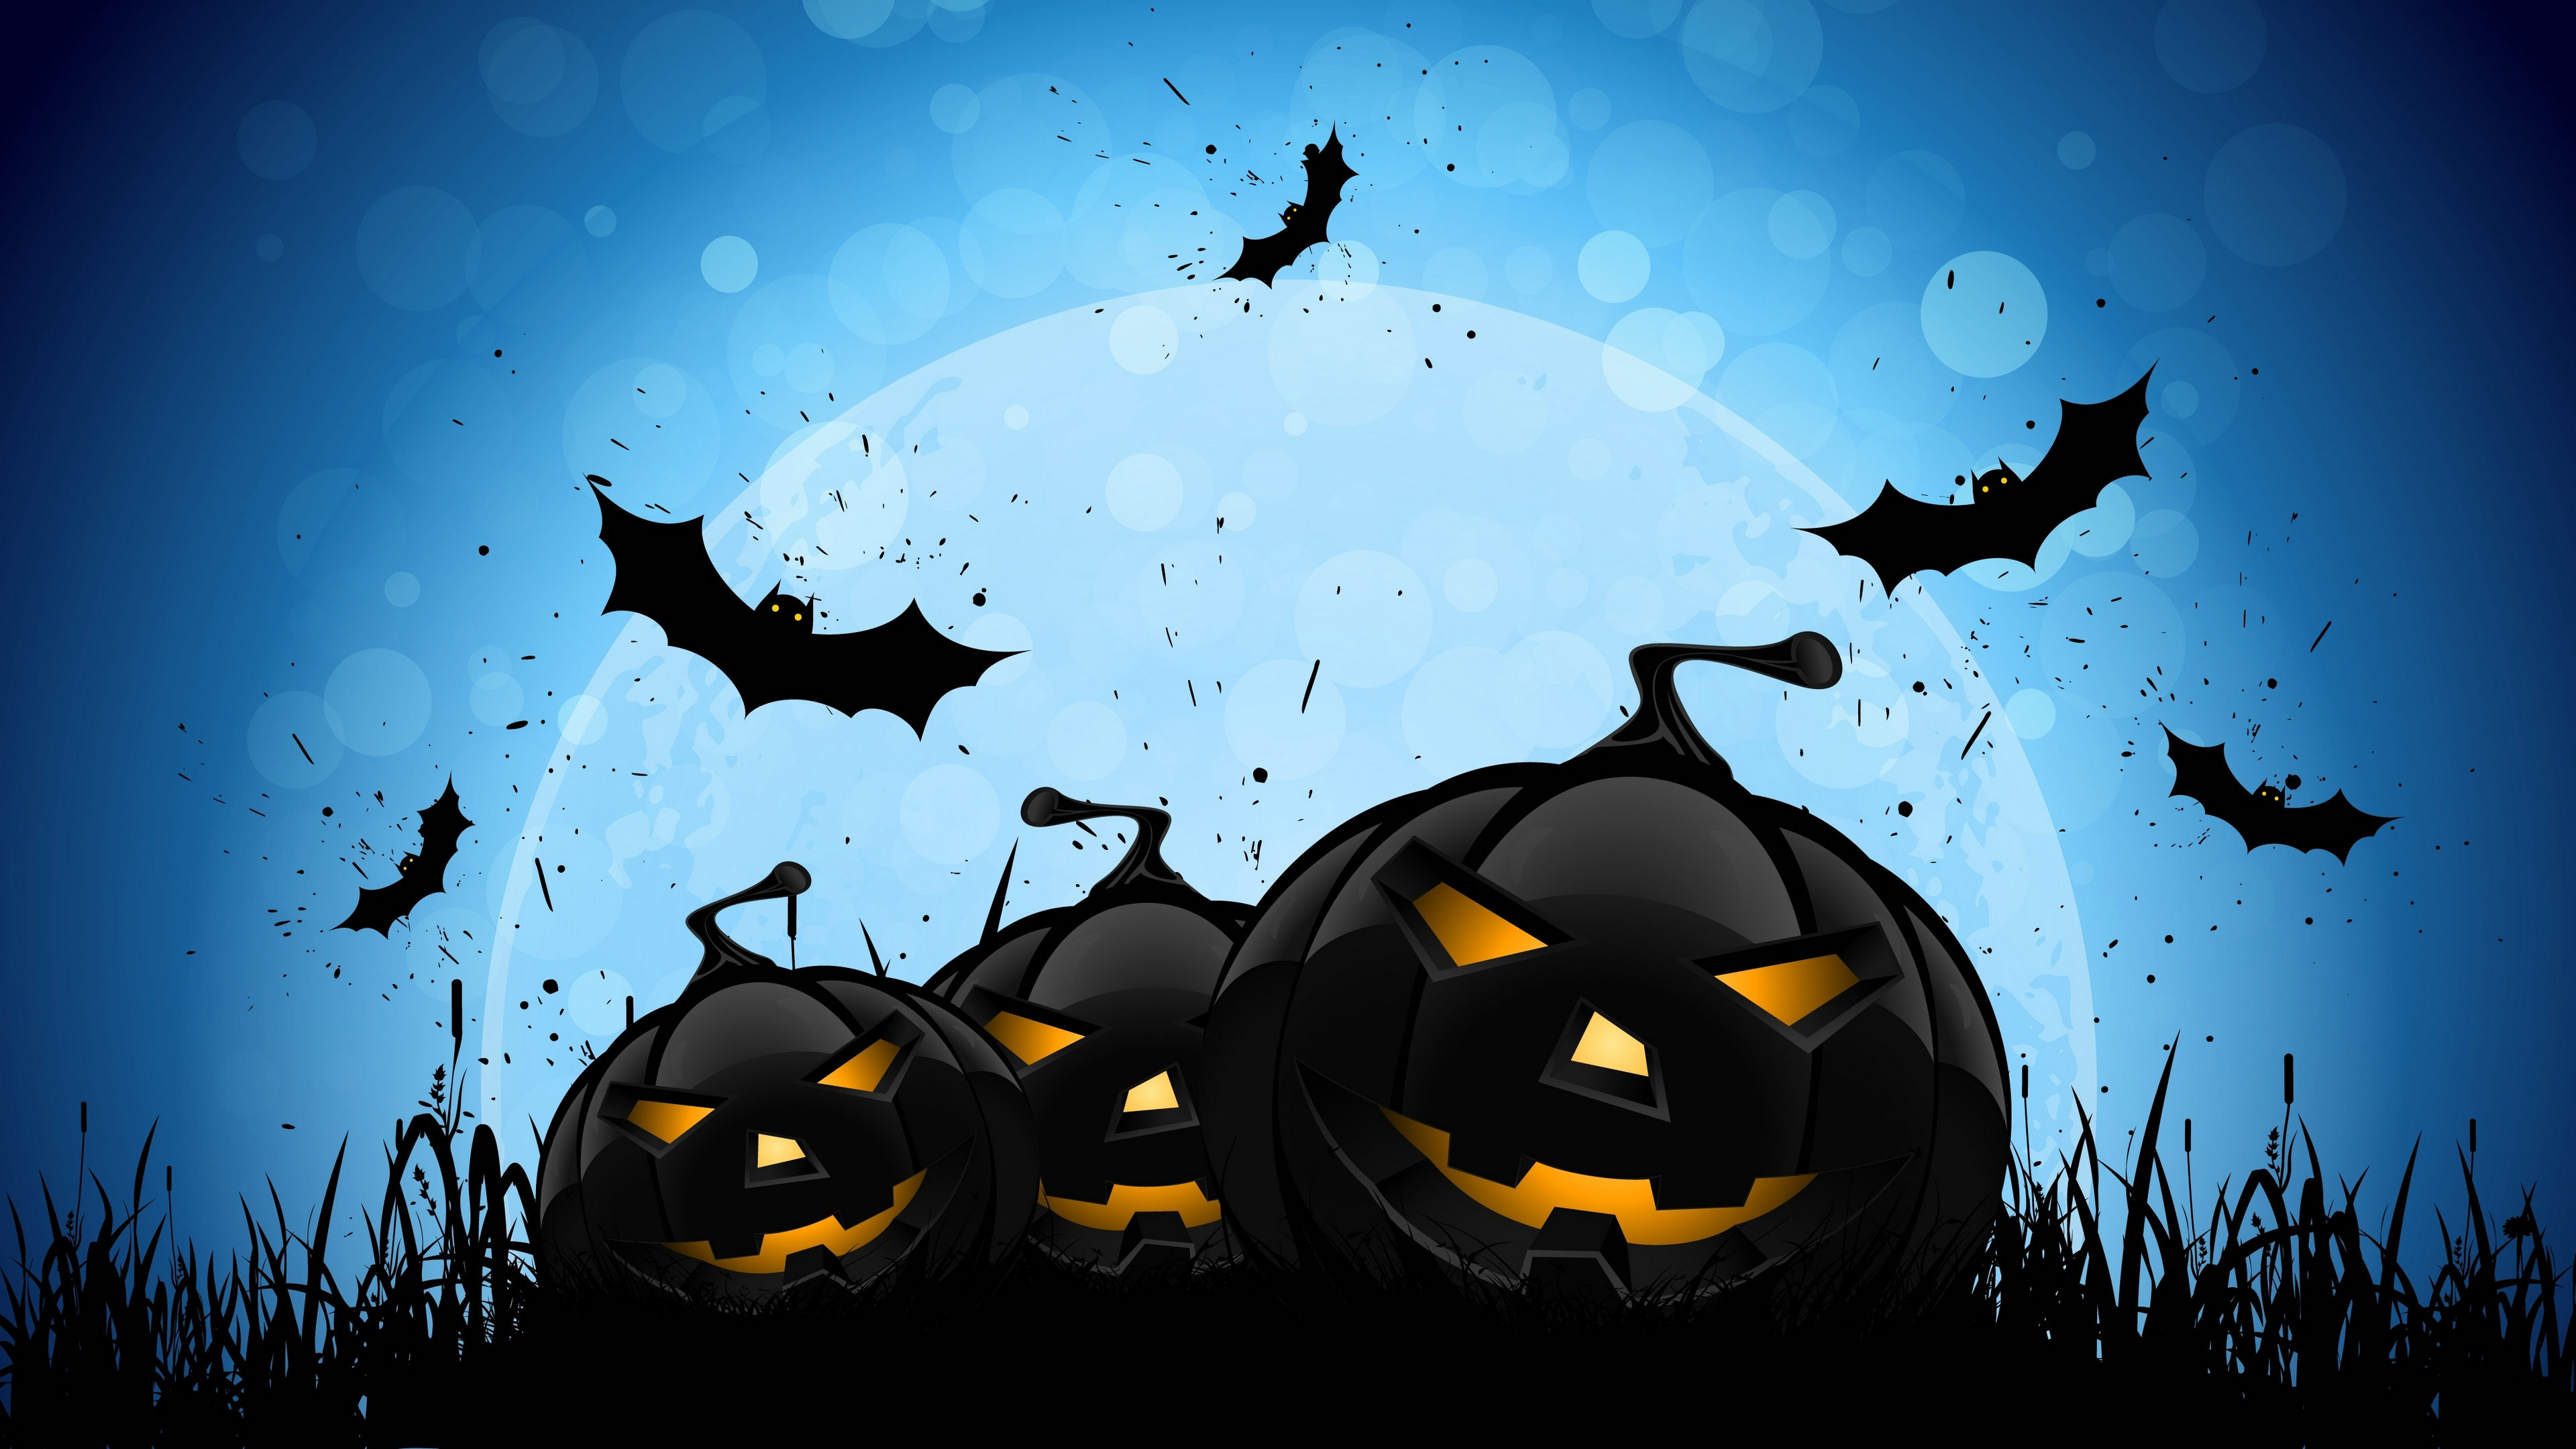 3840x2160 Halloween Wallpapers. Halloween Backgrounds Free Download | PixelsTalk.Net. Halloween  Backgrounds Free Download PixelsTalk Net